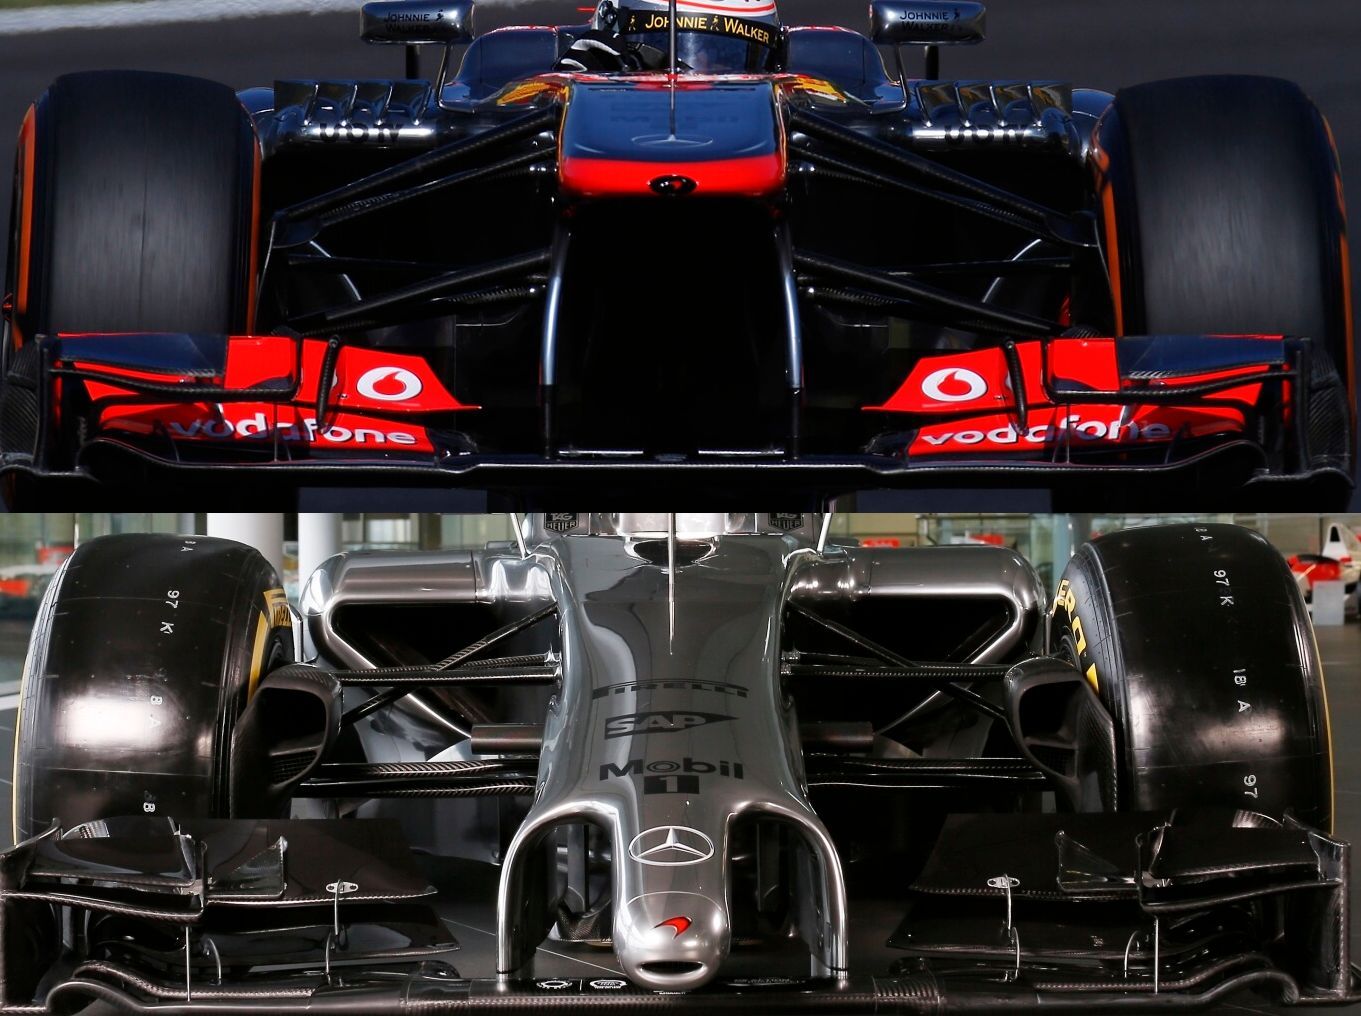 McLaren MP4-29 vs. McLaren MP4-28